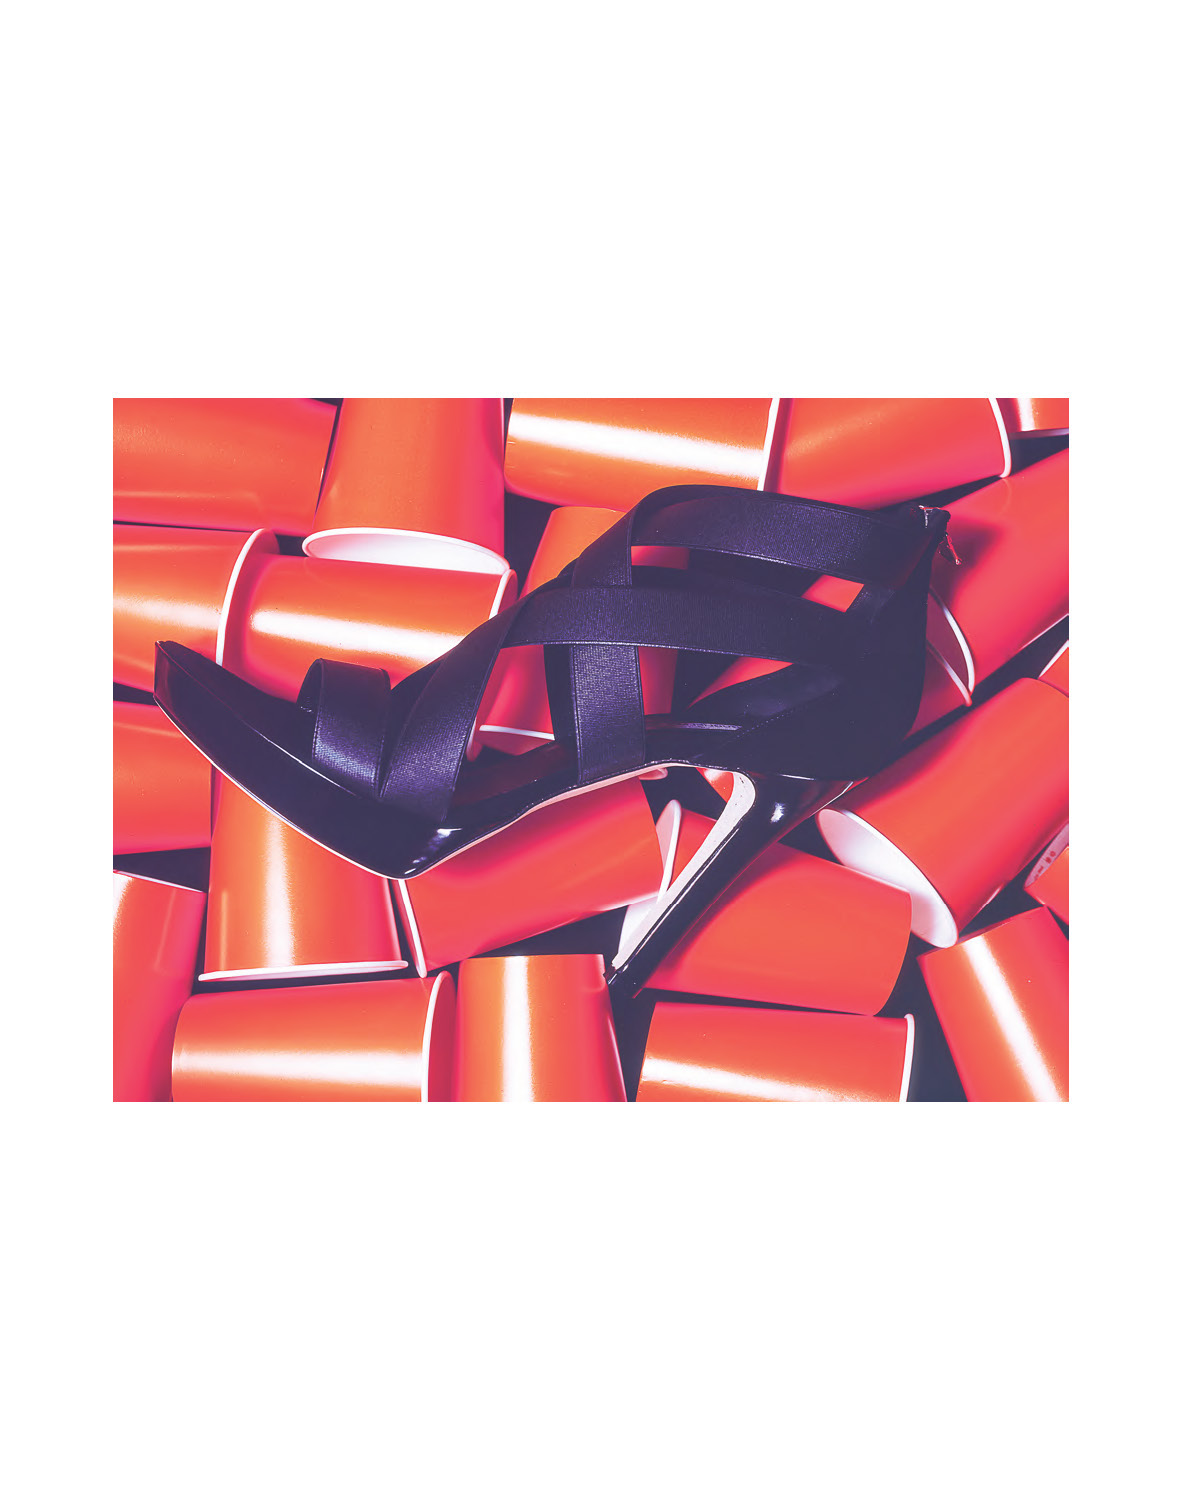 shoes still-life BICCHIERI pubblicita studio Layout arancione tacco vetro METALLO